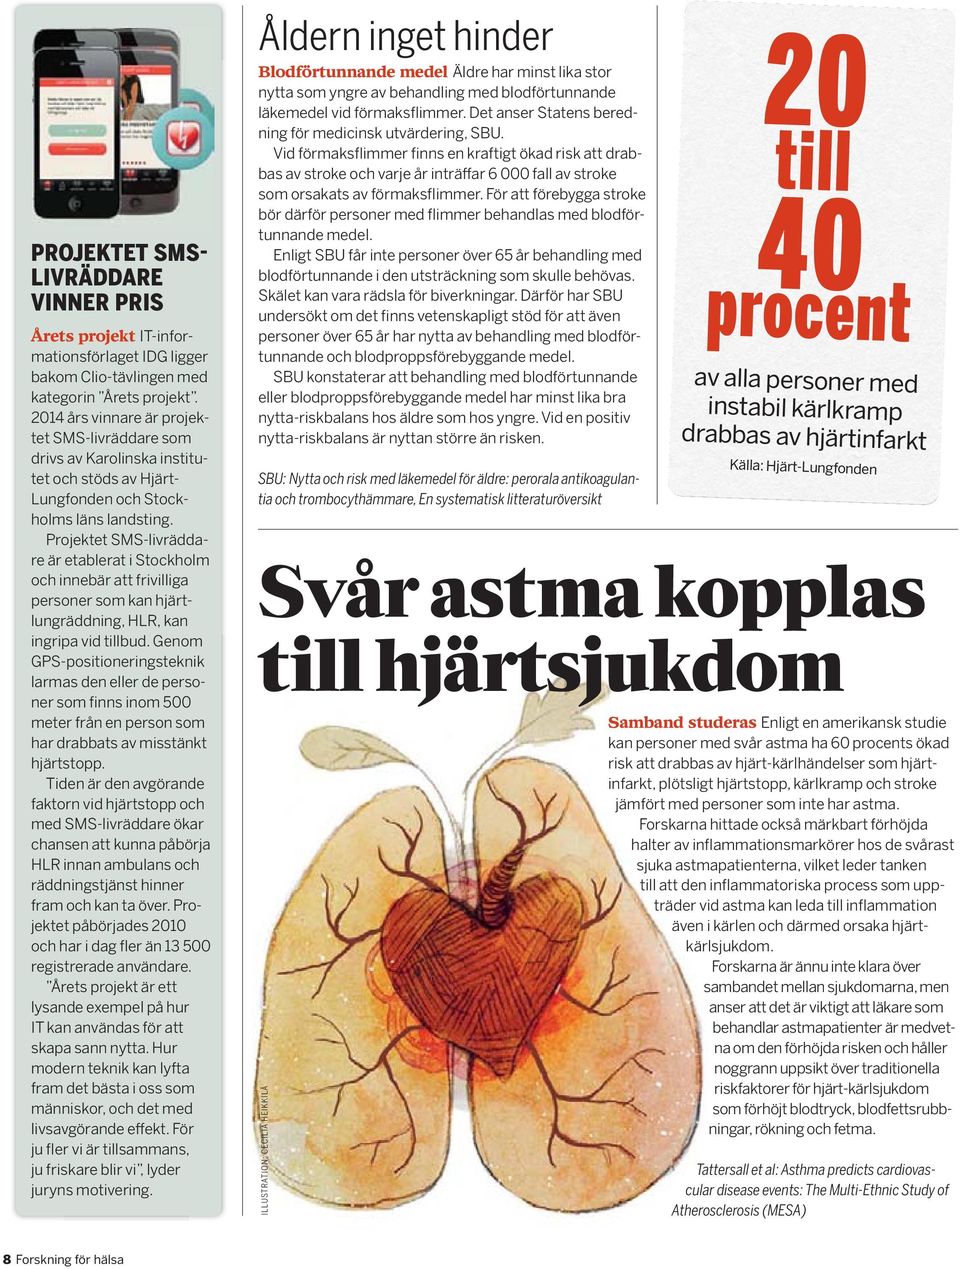 Projektet SMS-livräddare är etablerat i Stockholm och innebär att frivilliga personer som kan hjärtlungräddning, HLR, kan ingripa vid tillbud.